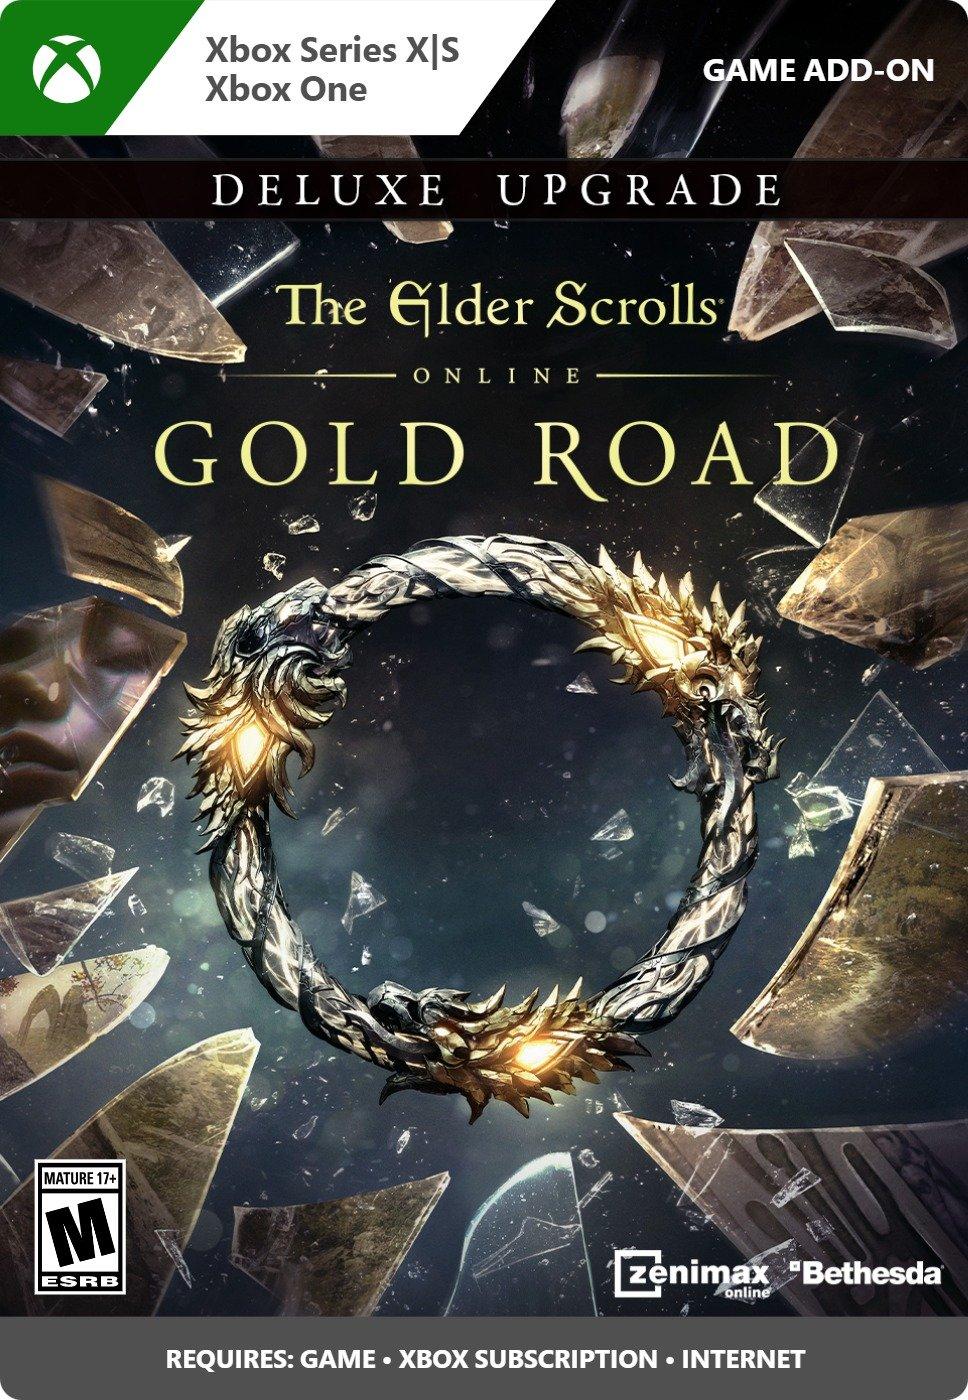 The Elder Scrolls Online Gold Road DLC Deluxe Upgrade